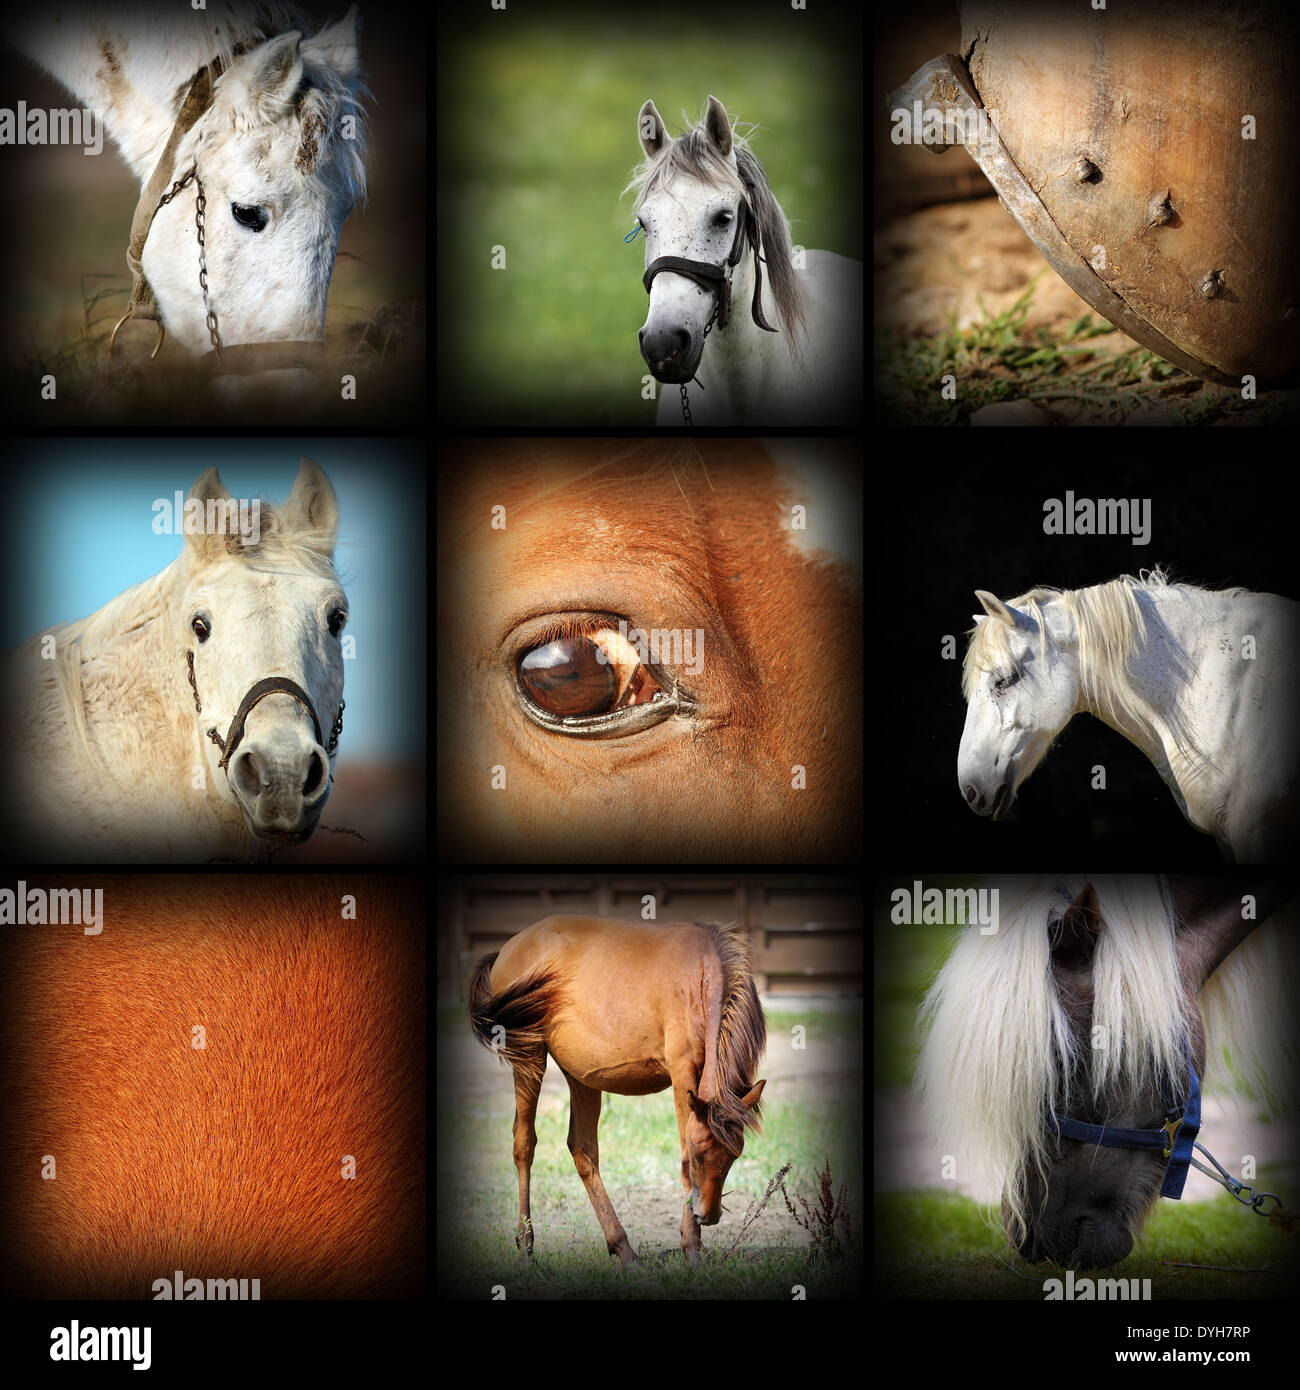 Colección de imágenes de detalles de caballos, collage con fotos juntas, con vignette Foto de stock